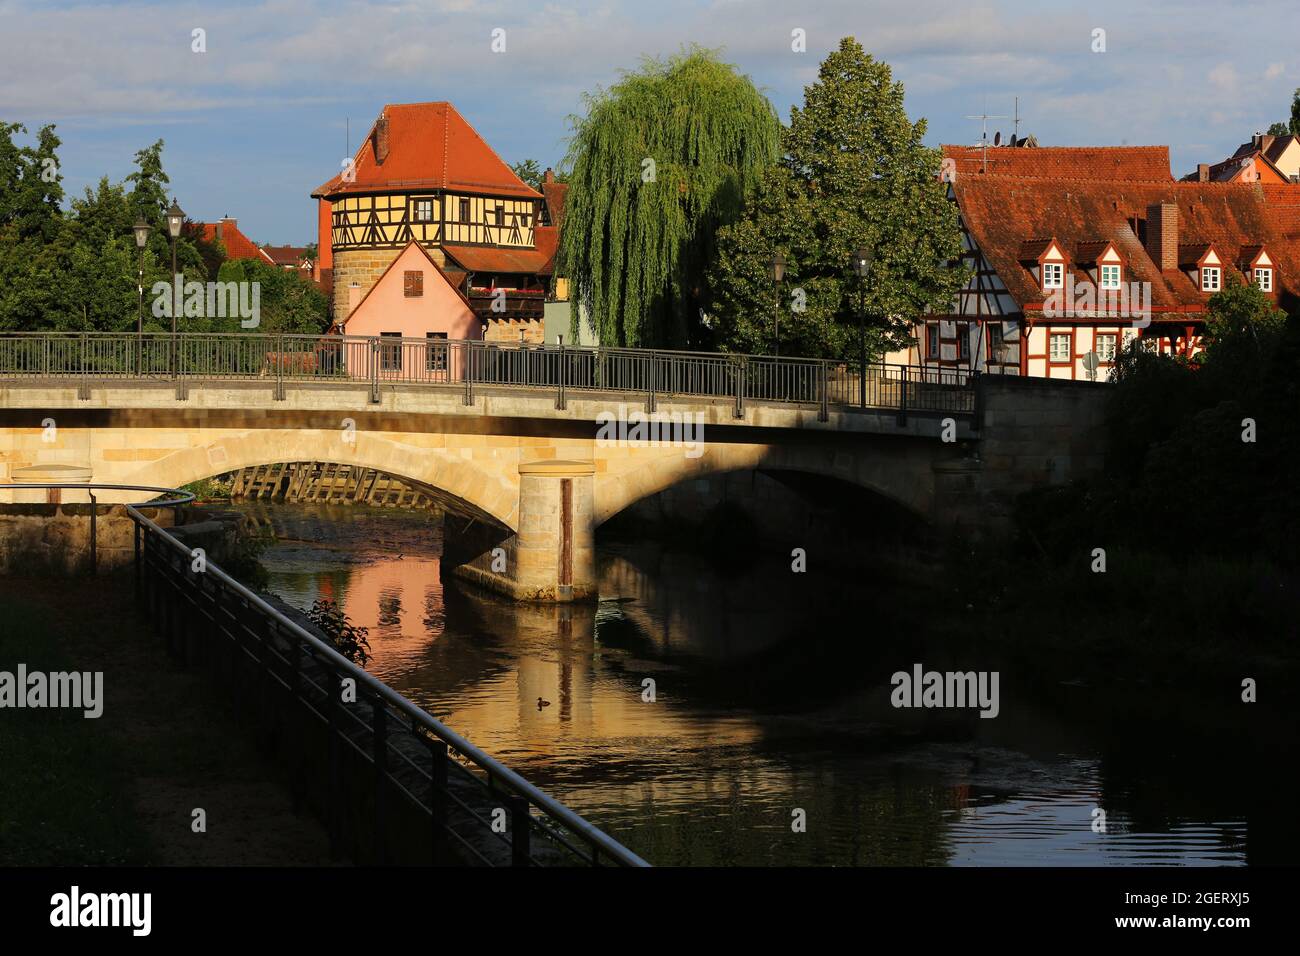 Lauf bei Nürnberg mit Altstadt oder Innenstadt mit Fachwerkhäuser Foto Stock